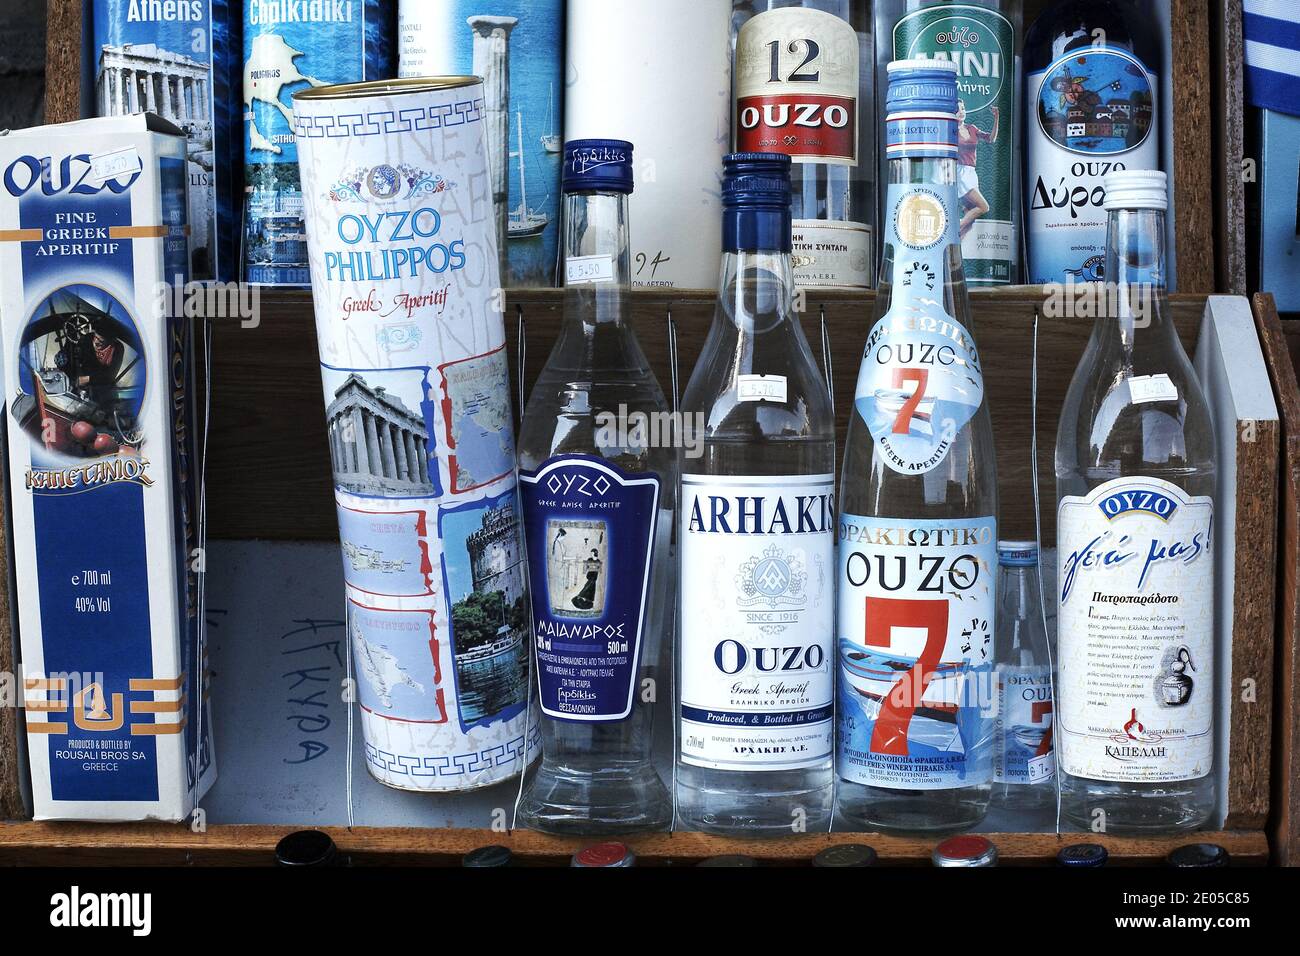 Bouteilles de grec Ouzo, boisson alcoolisée traditionnelle, Thessalonique, Grèce Banque D'Images